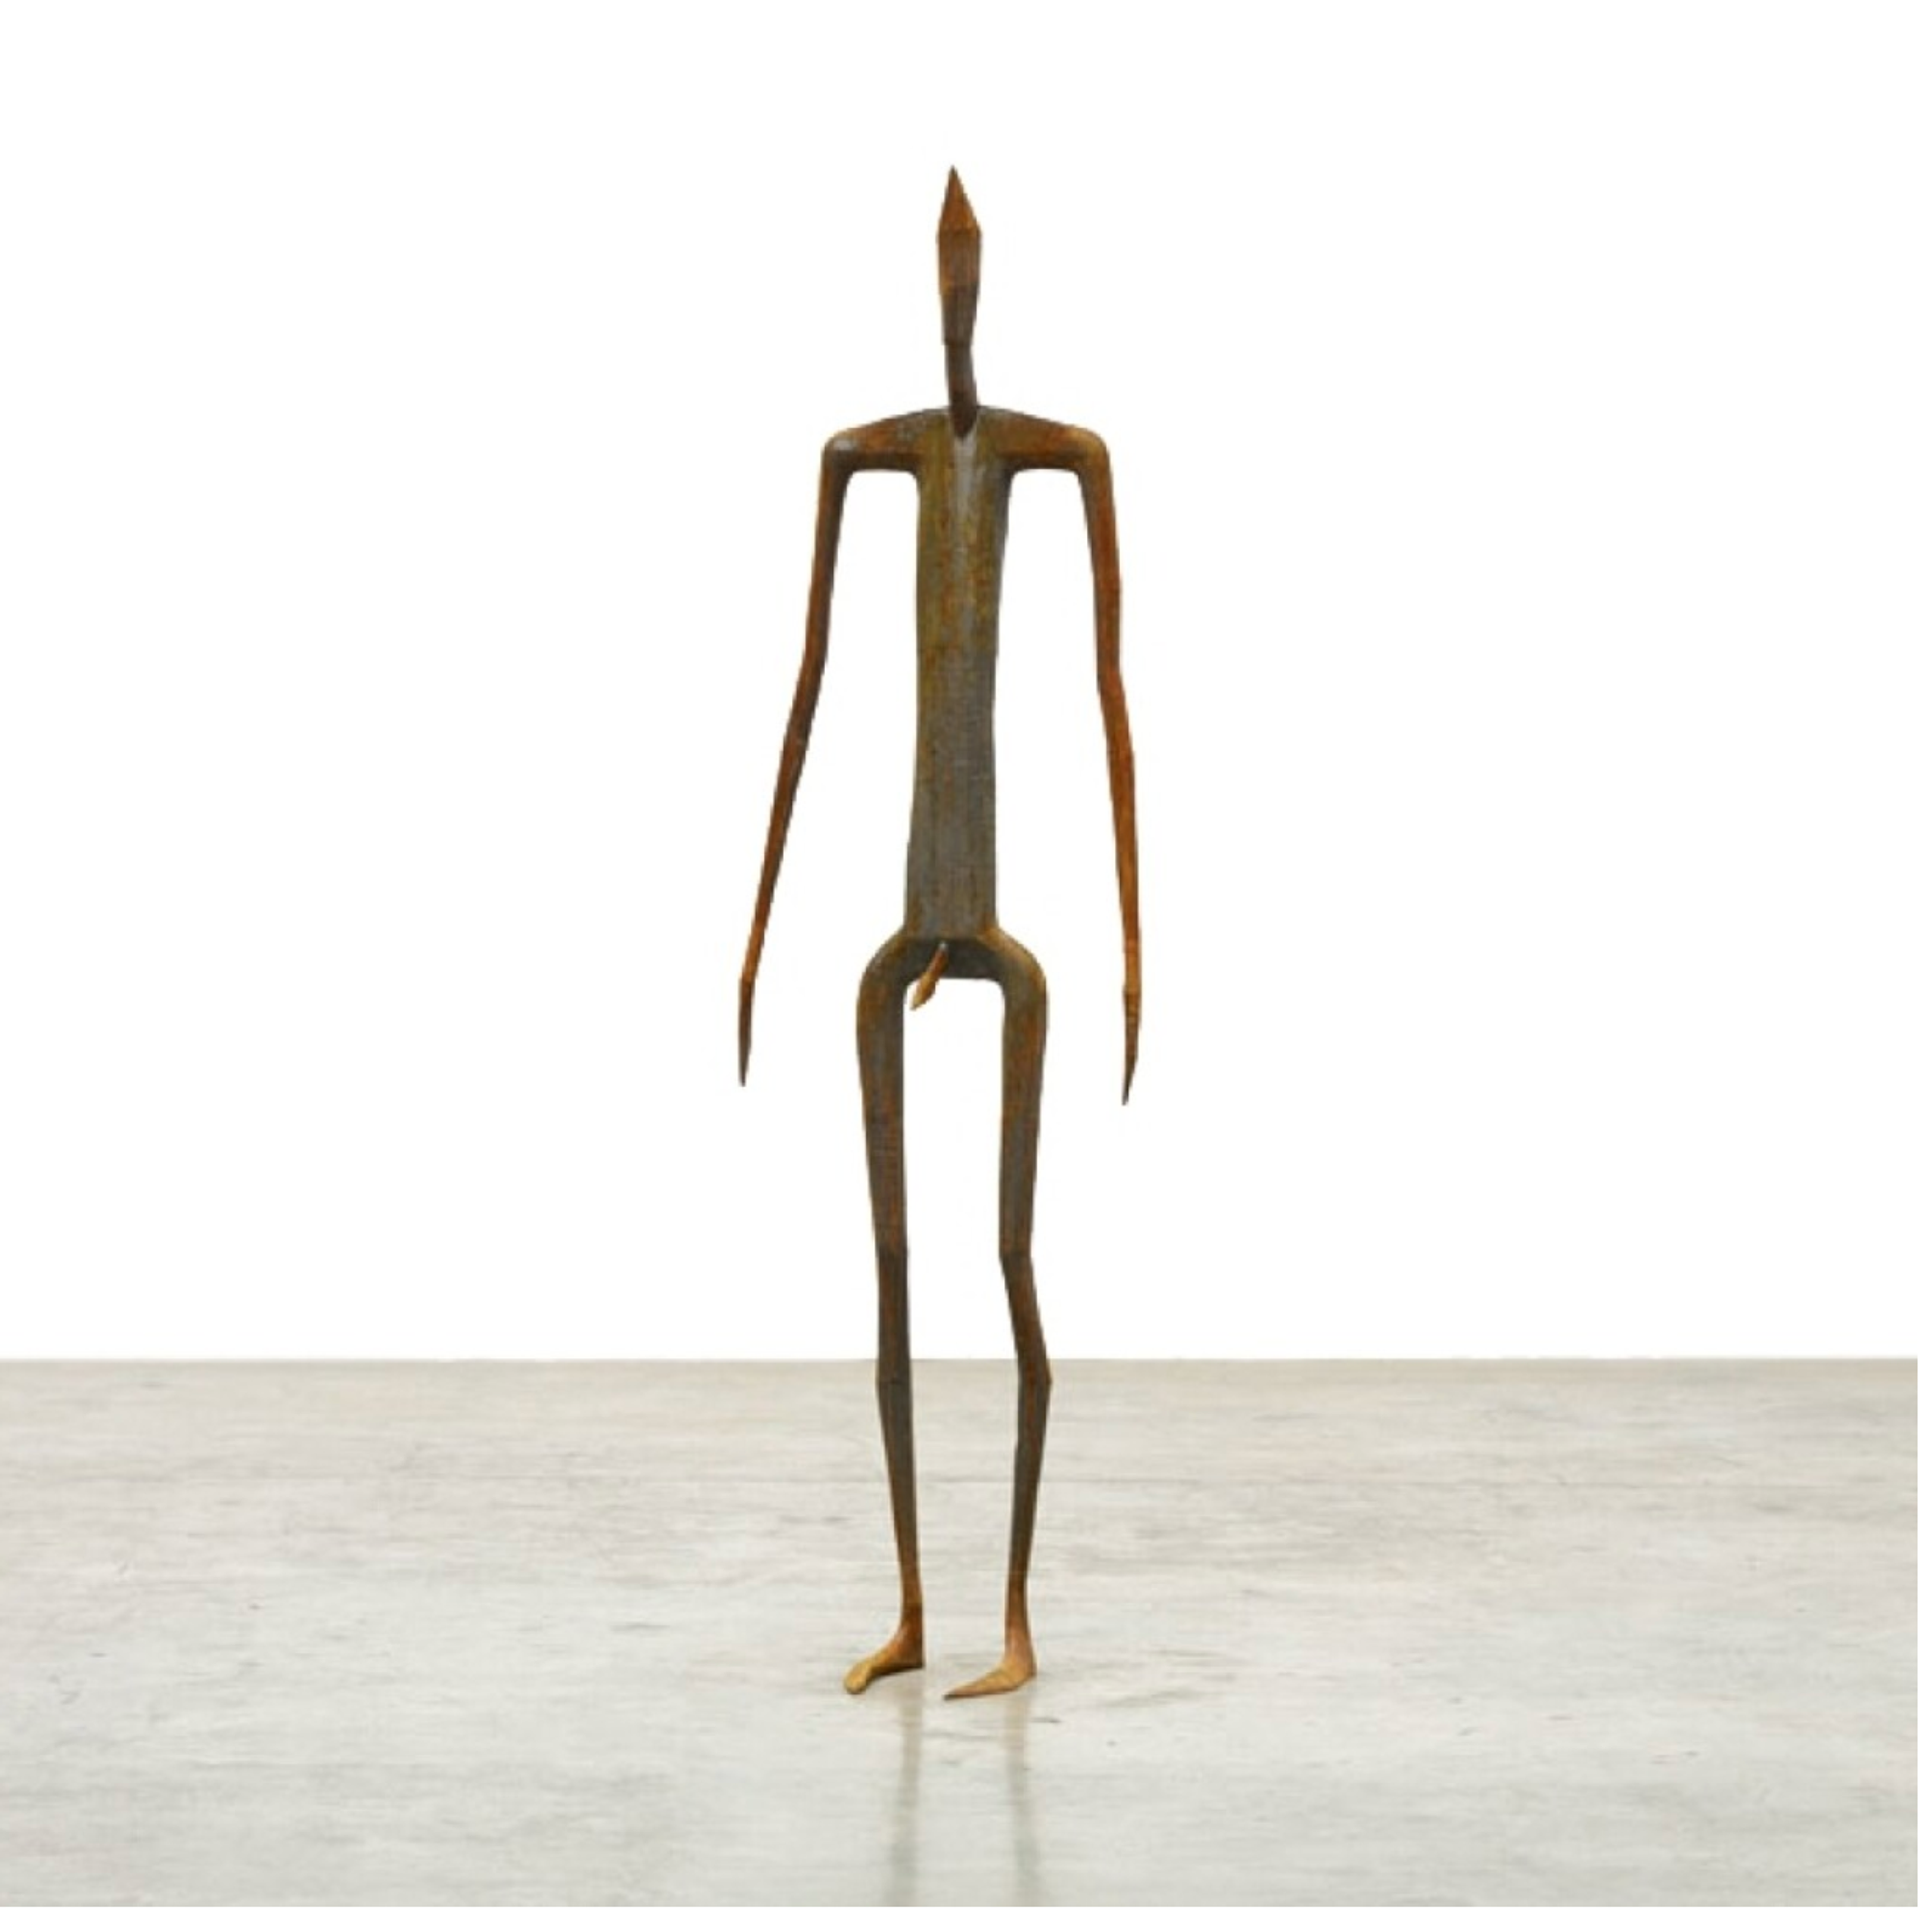 An outline cast iron sculpture of a standing human figure.